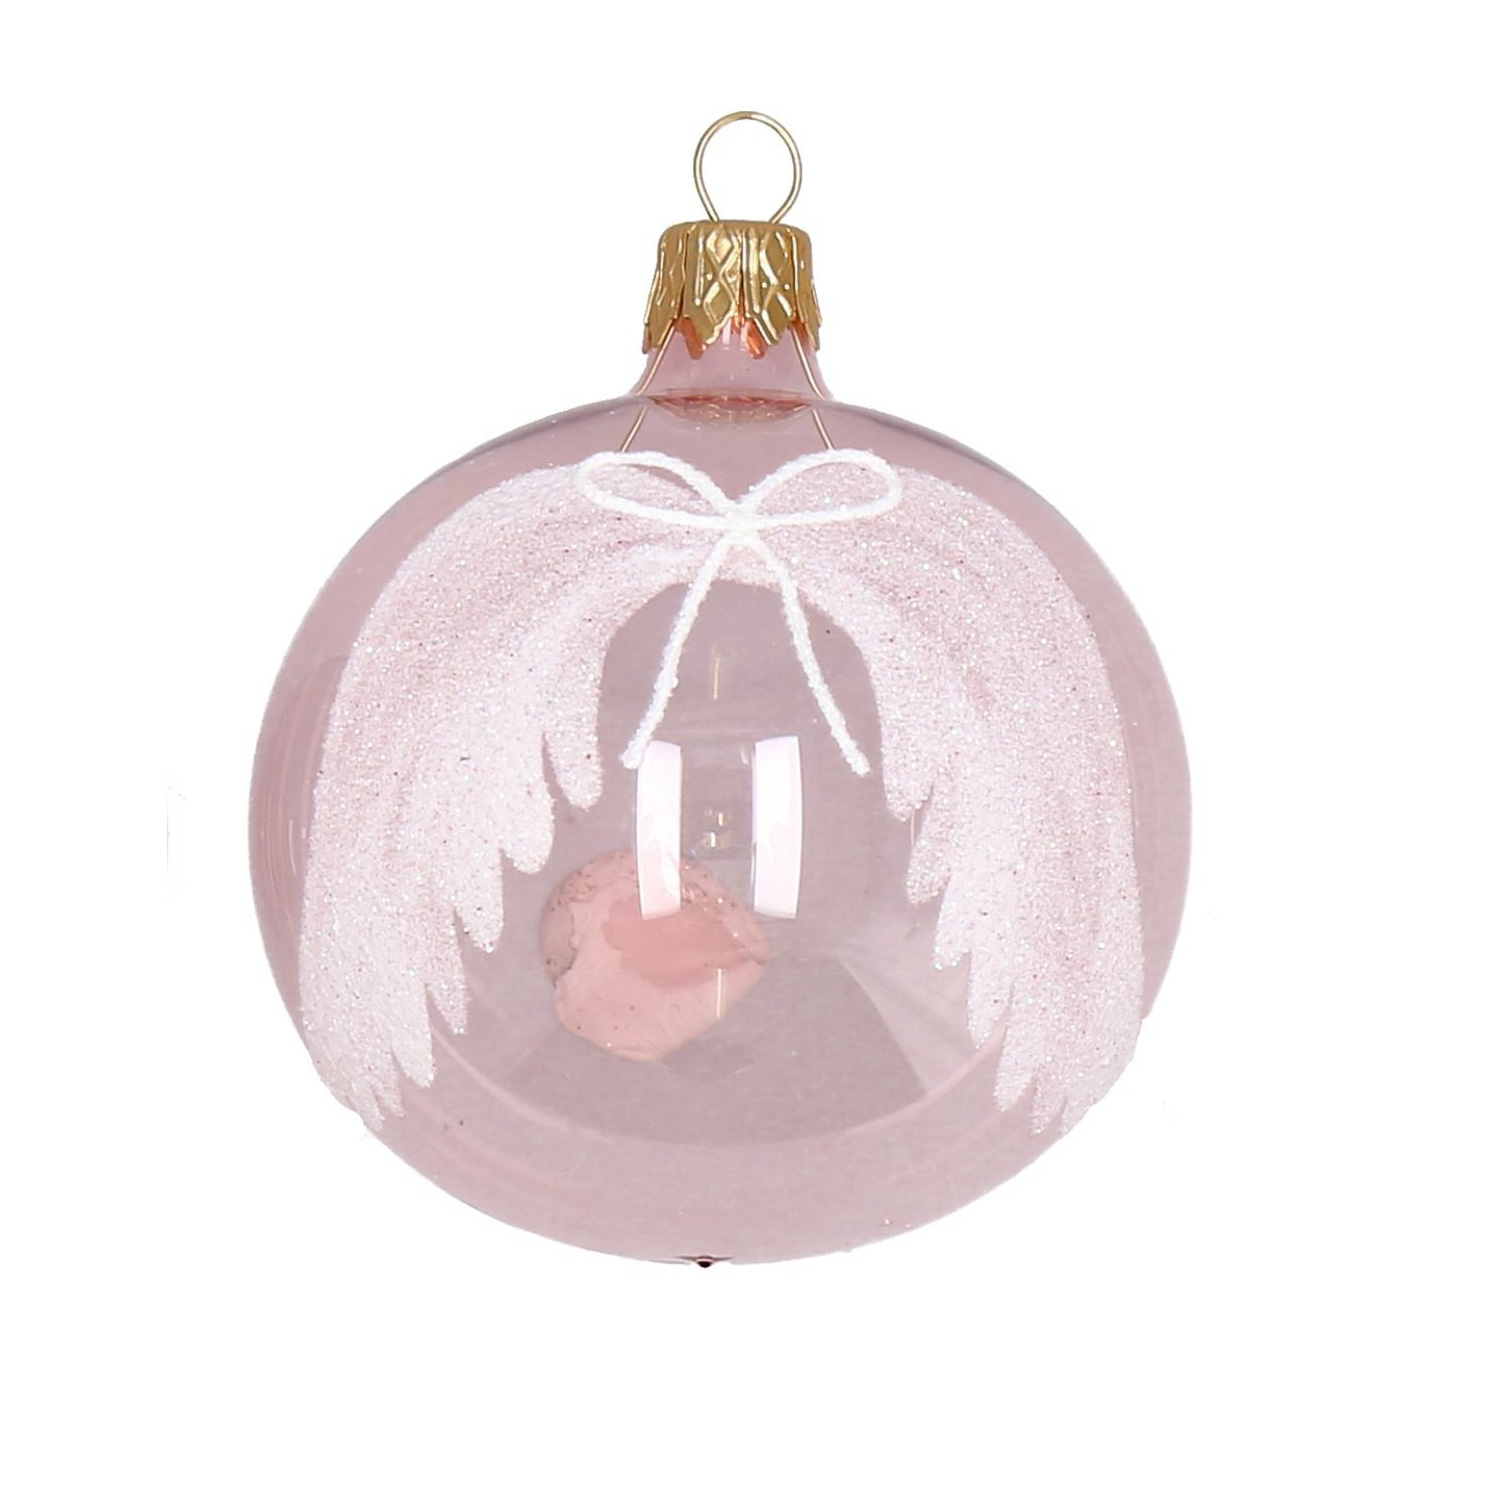 Weihnachtskugel "Flügel" rosa-weiß-Glitzer, D. ca. 8 cm, handbemalt, klar rosa 